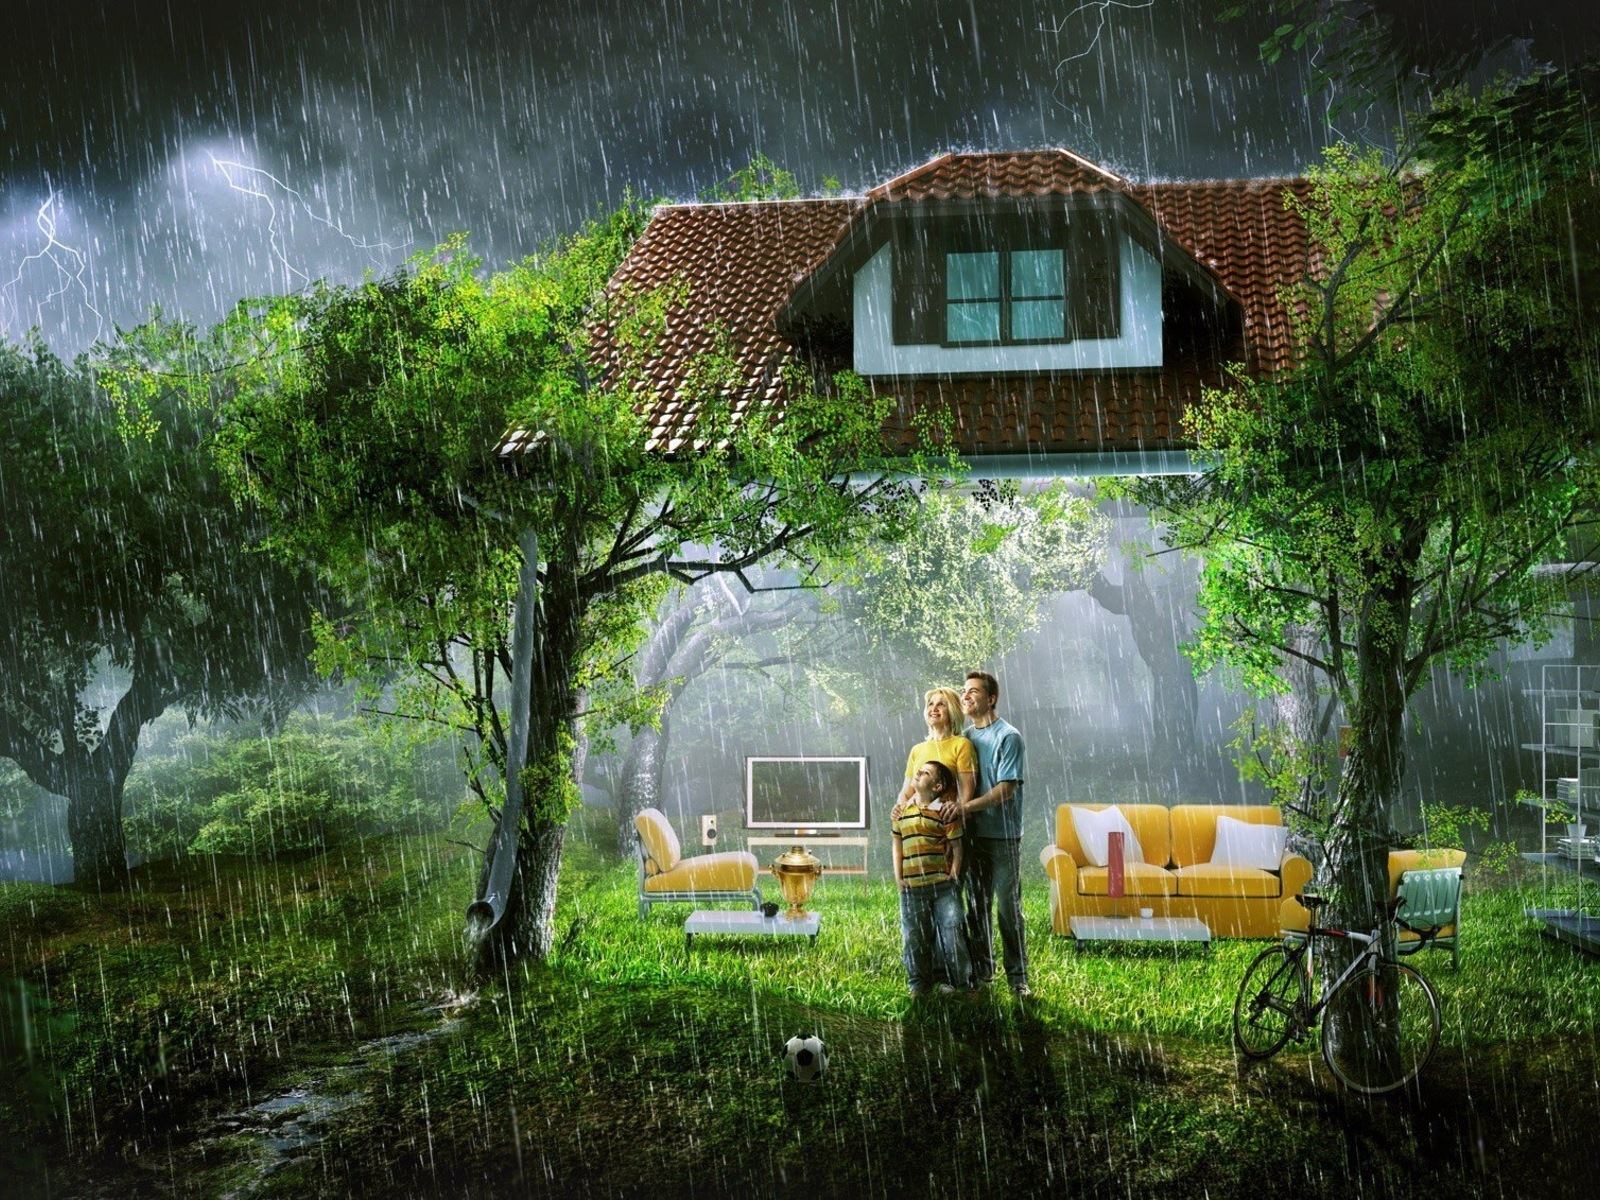 3d обои стены дома вдруг исчезли, счастливая семья стоит под тёплым летним дождём, вдыхая полной грудью пряный запах леса и наслаждаясь мгновениями счастья...  дождь # 34531